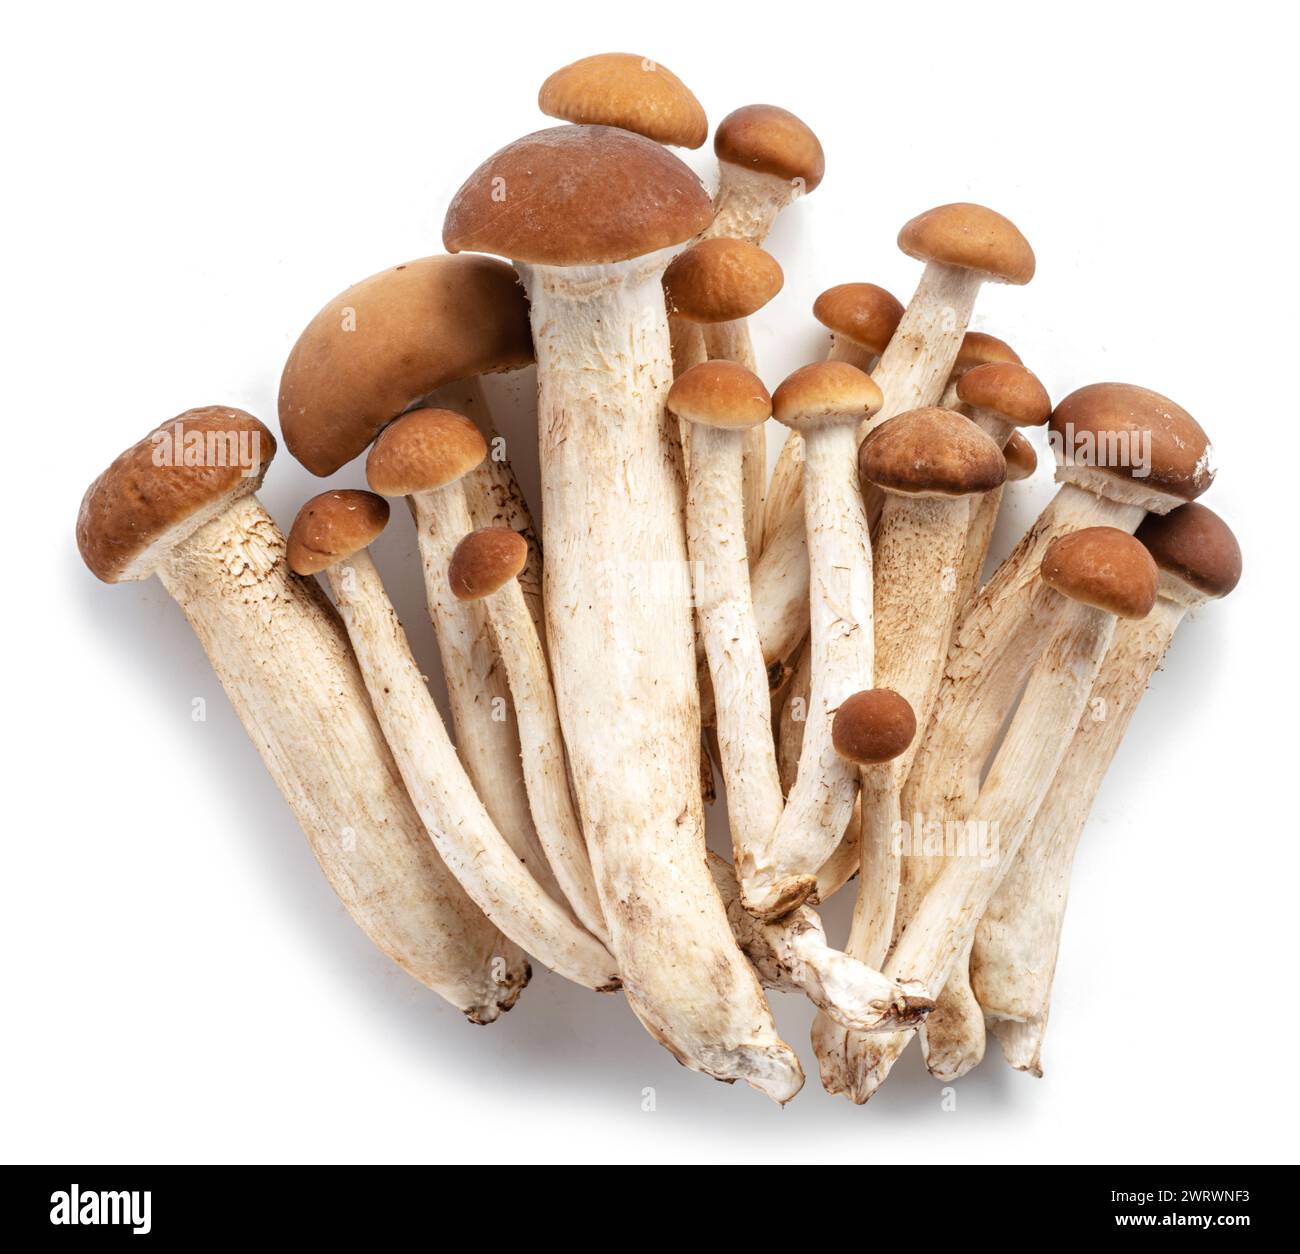 Group of honey mushrooms isolated on white background. Stock Photo